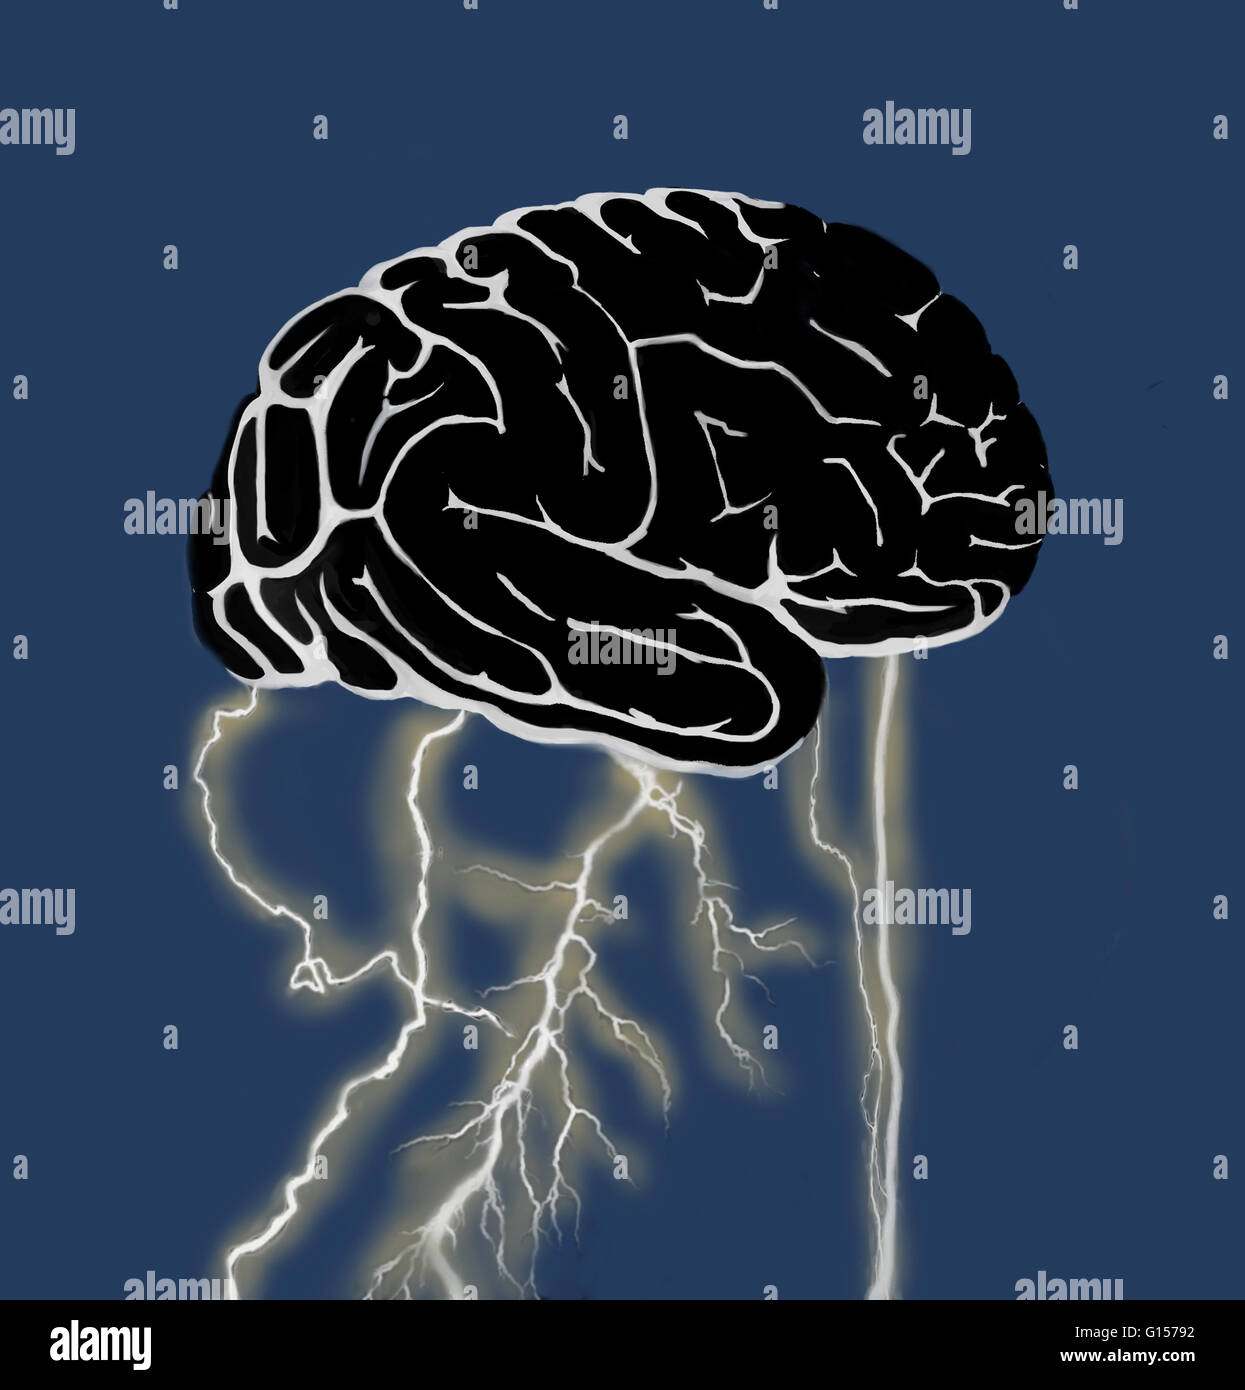 Illustration conceptuelle d'une séance de brainstorming. L'éclair à la base du cerveau pourrait représenter l'activité électrique pendant la formation de pensées. Il pourrait également représenter la moelle épinière, qui, avec le cerveau forme le syst nerveux central Banque D'Images